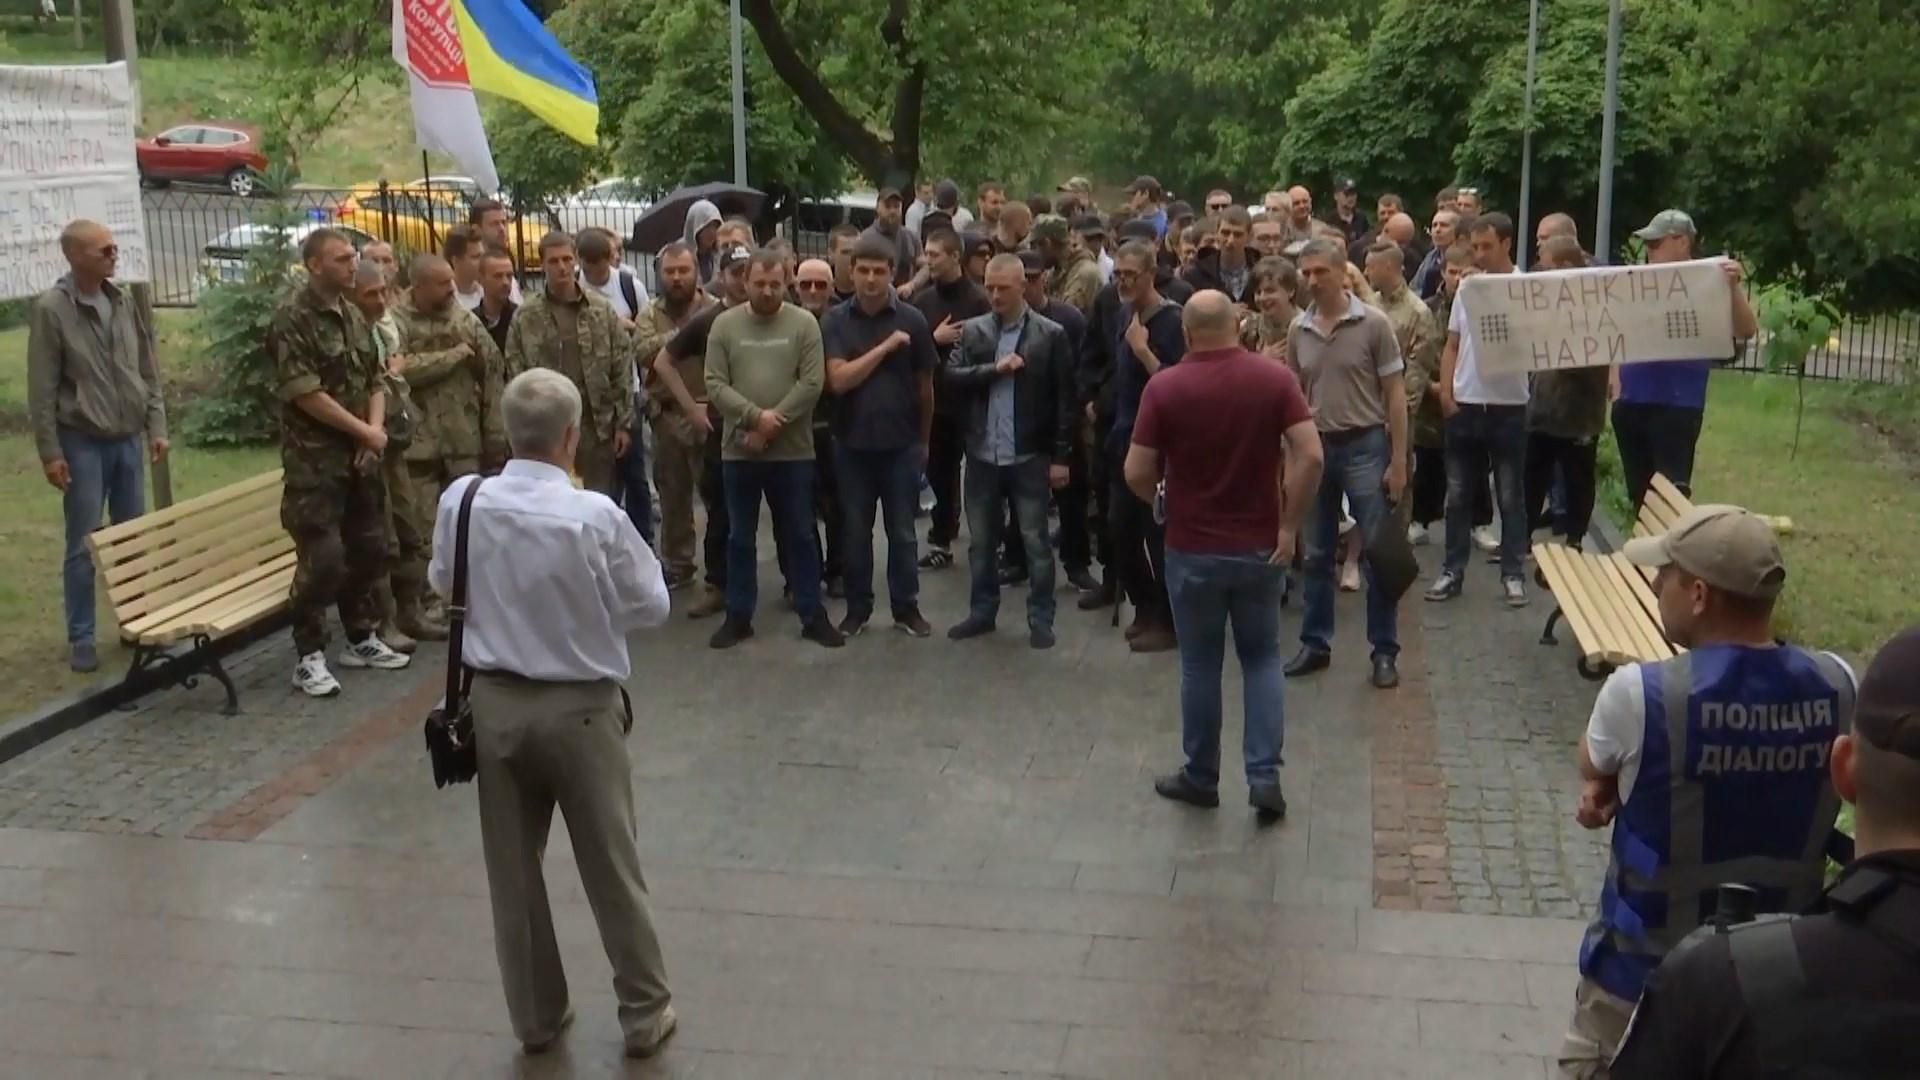 У Києві активісти пікетують проти судді, який ймовірно причетний до корупційних схем: деталі